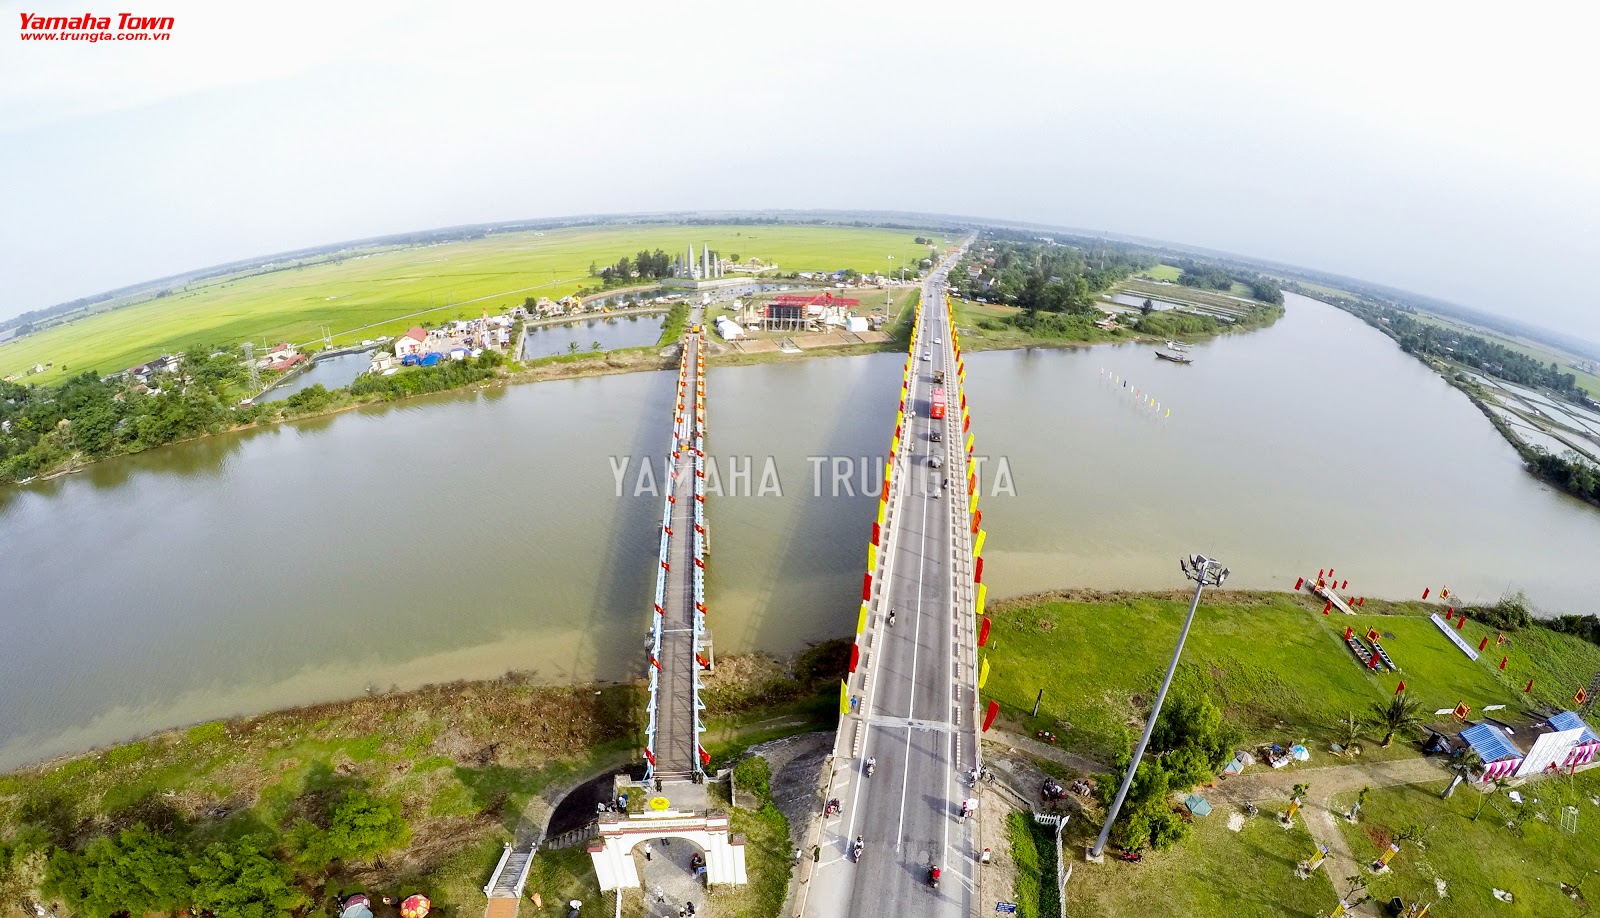  Cầu Hiền Lương - Cẩm nang du lịch bụi Quảng Trị 2016 1